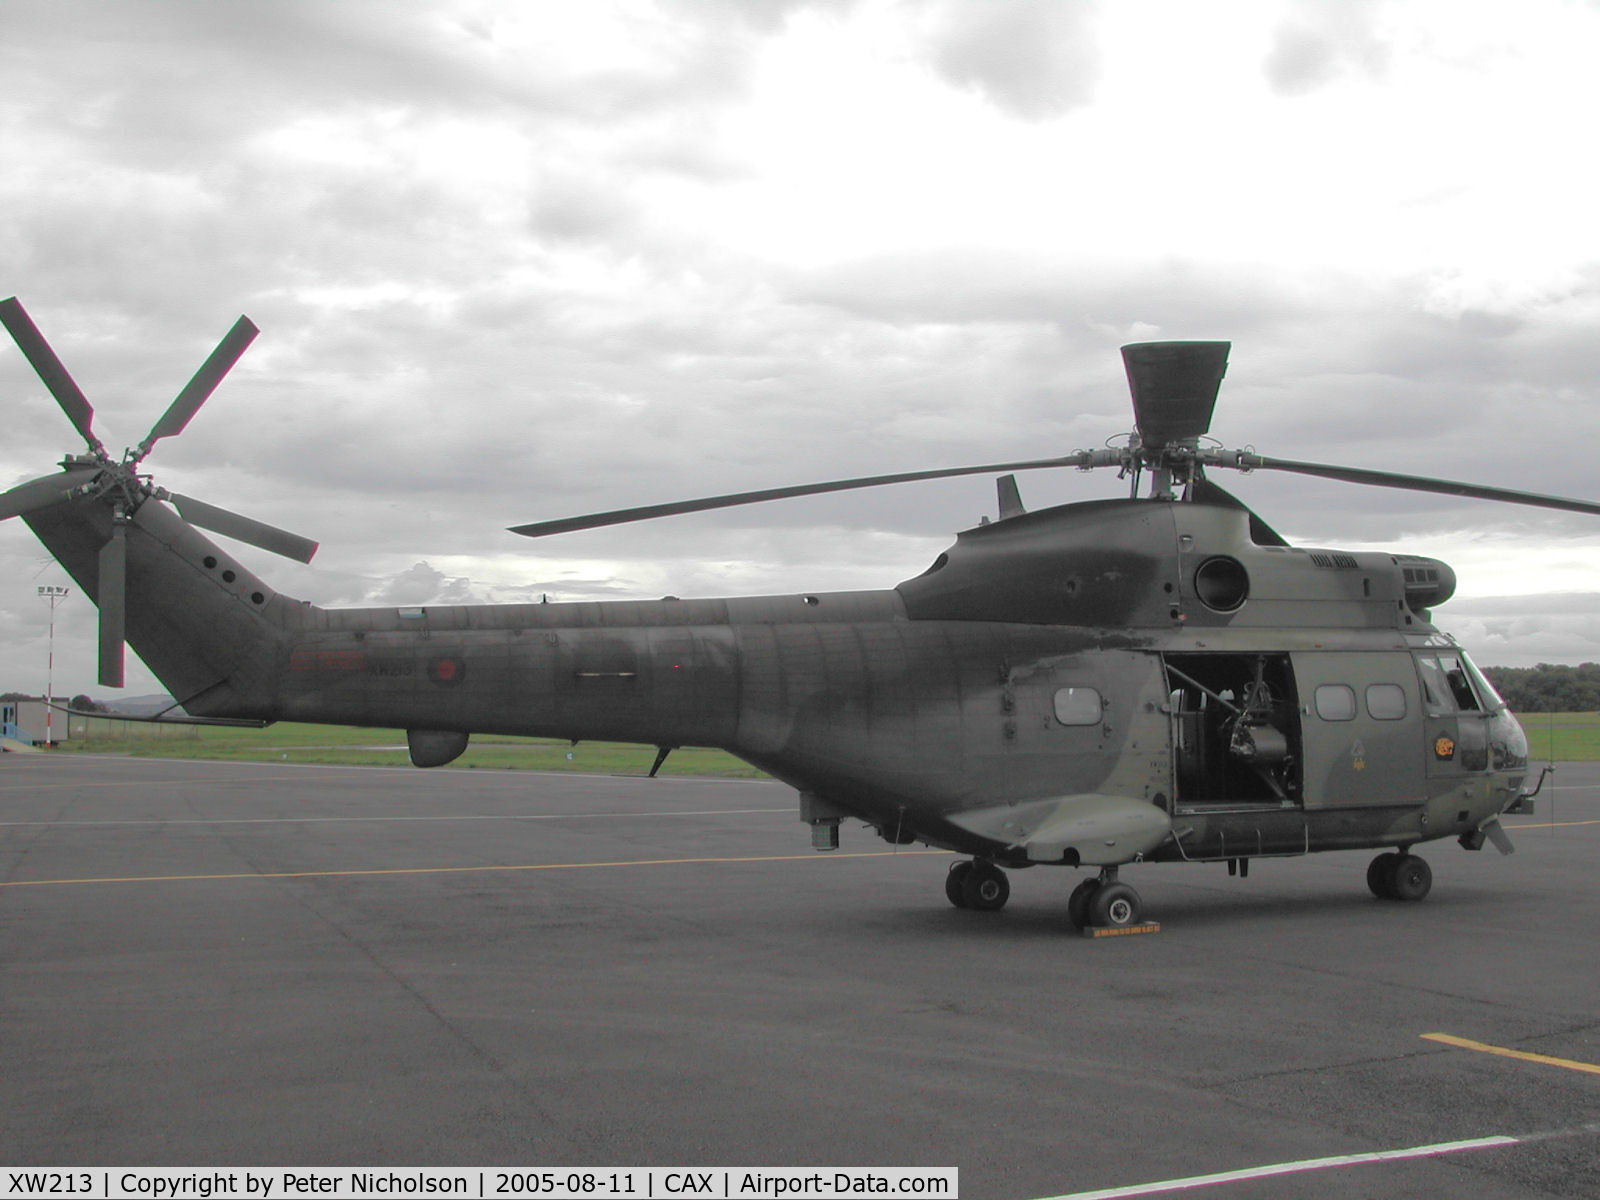 XW213, 1971 Westland Puma HC.1 C/N 1116, Puma HC.1, Callsign Warlock 2, of 33 Squadron as seen at Carlisle in August 2005.